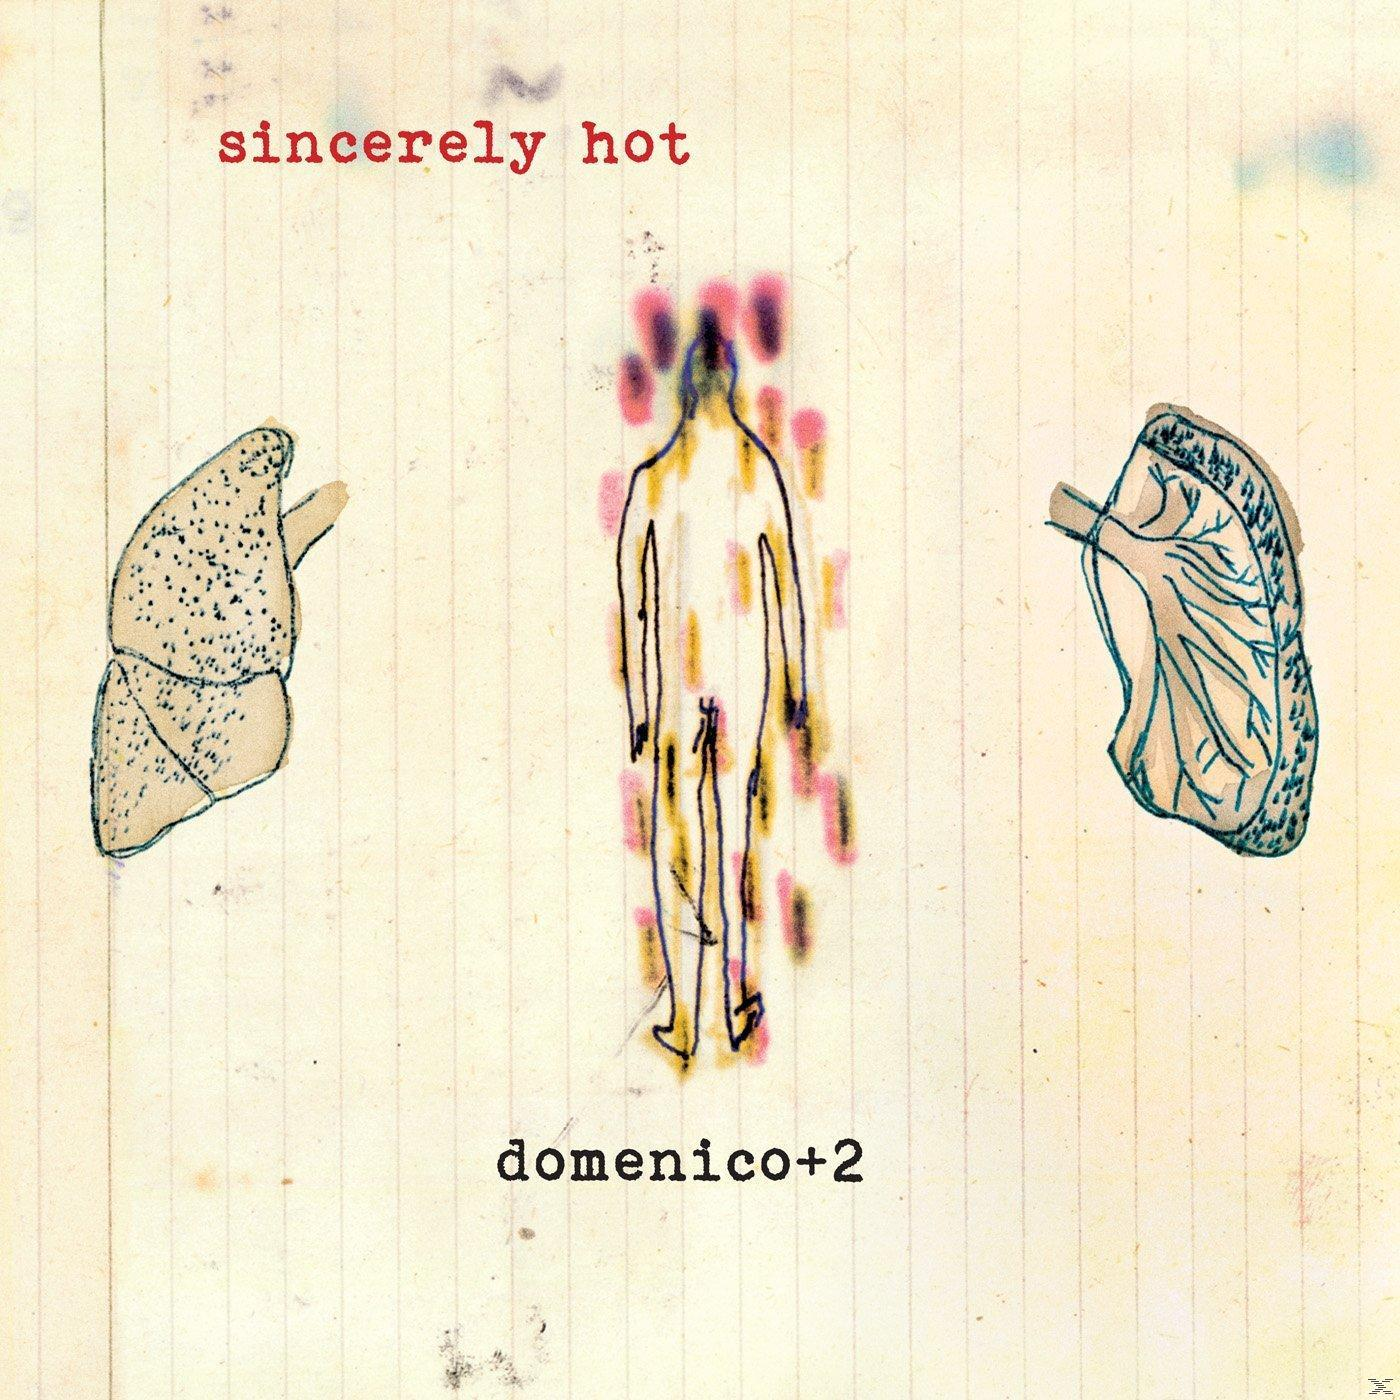 Domenico+2 Hot (Vinyl) - Sincerely -